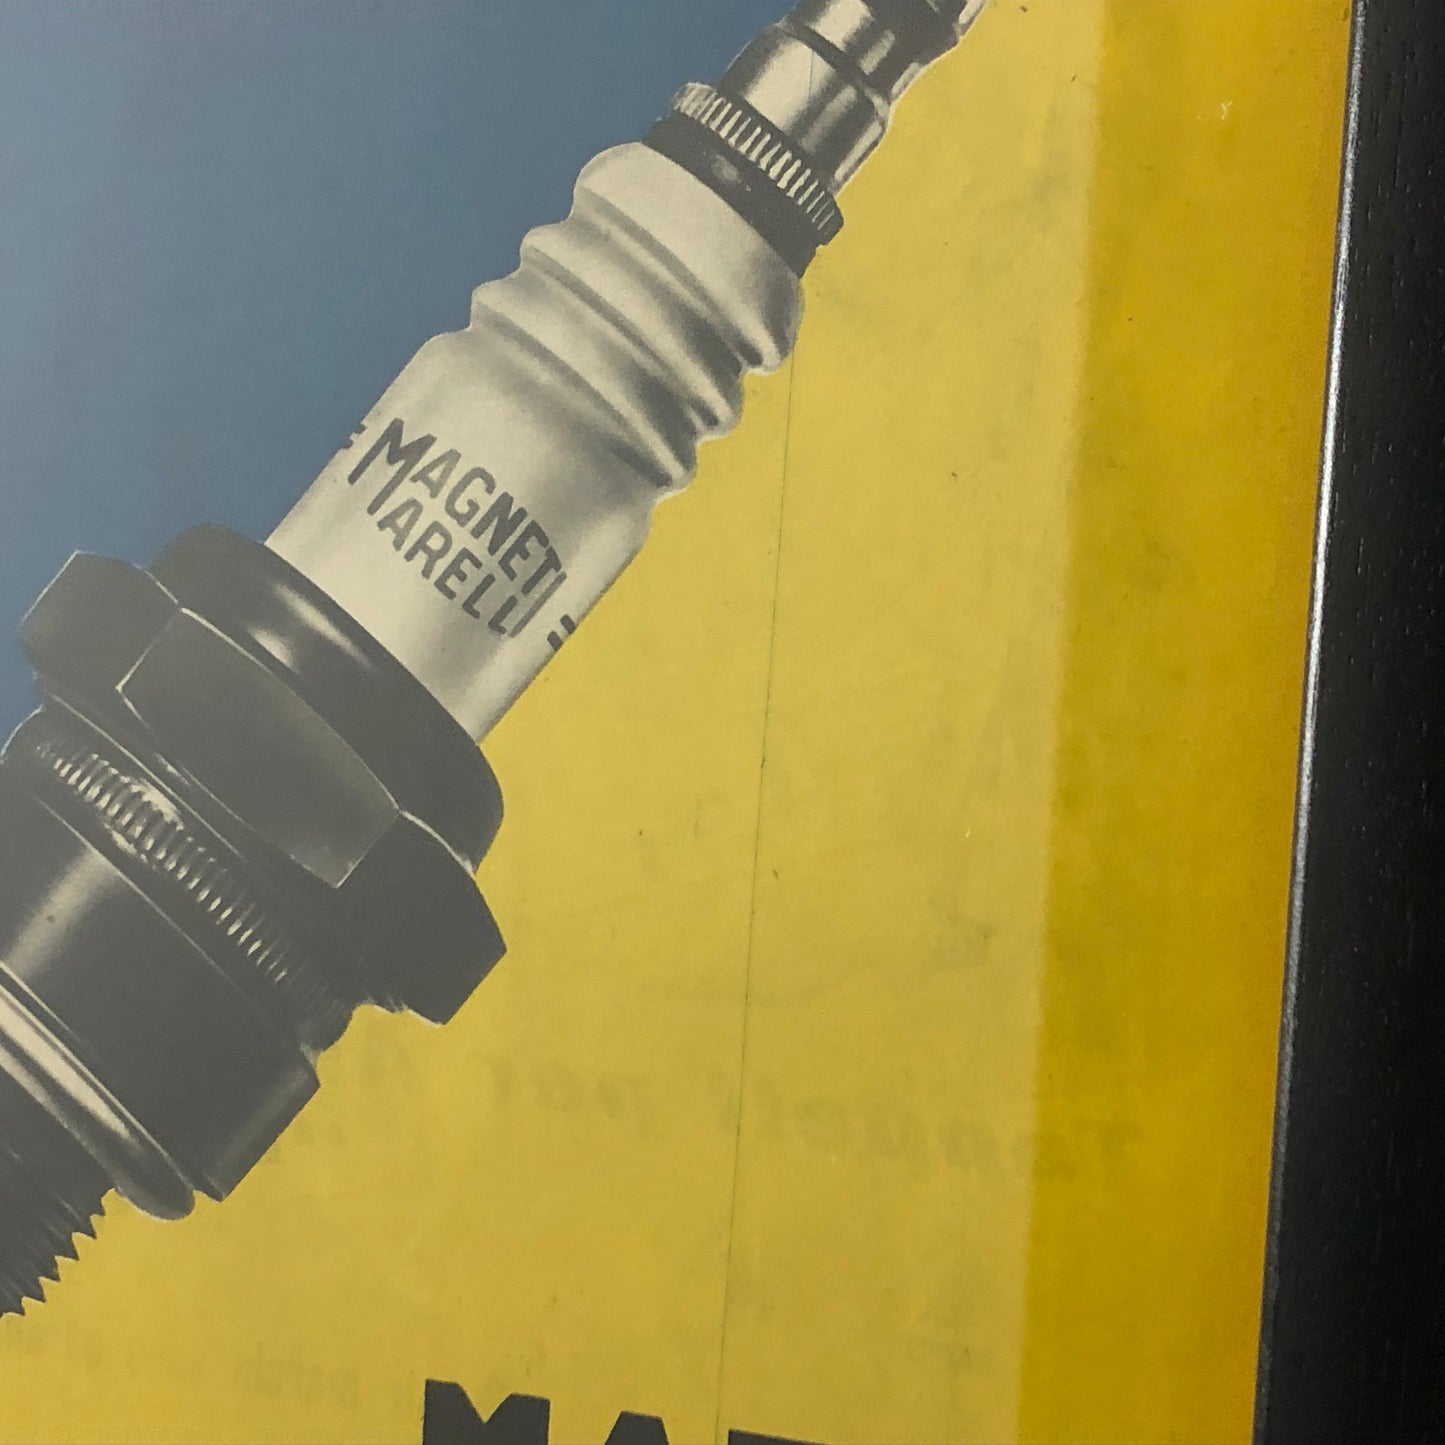 Magneti Marelli, 1960 Advertising Magneti Marelli Spark Plug